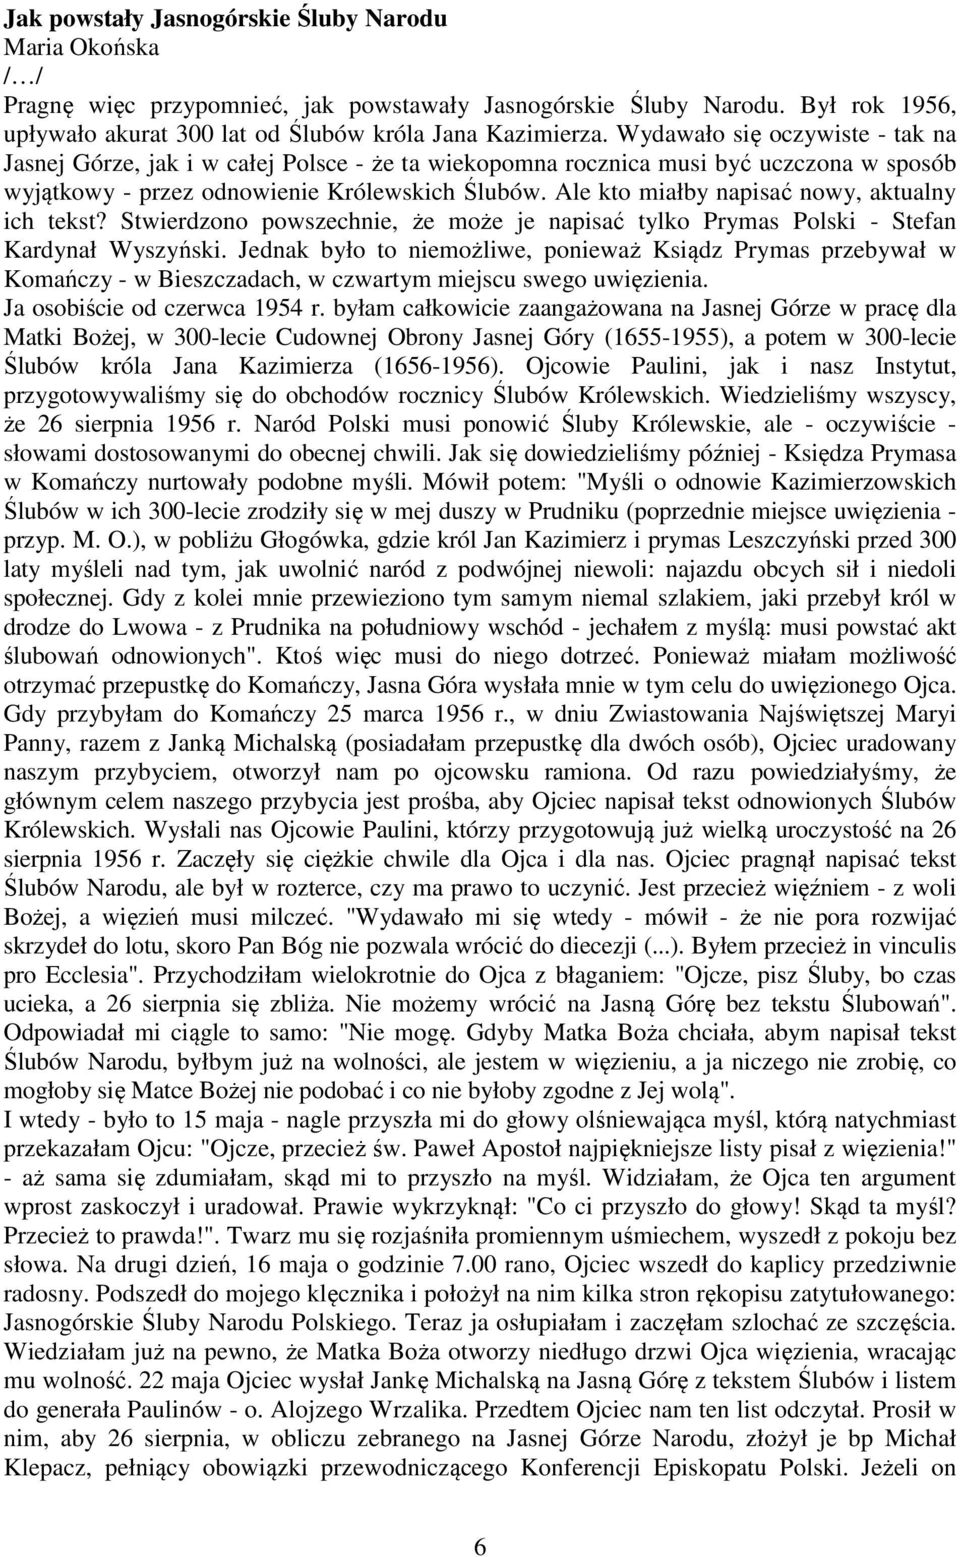 Ale kto miałby napisać nowy, aktualny ich tekst? Stwierdzono powszechnie, że może je napisać tylko Prymas Polski - Stefan Kardynał Wyszyński.